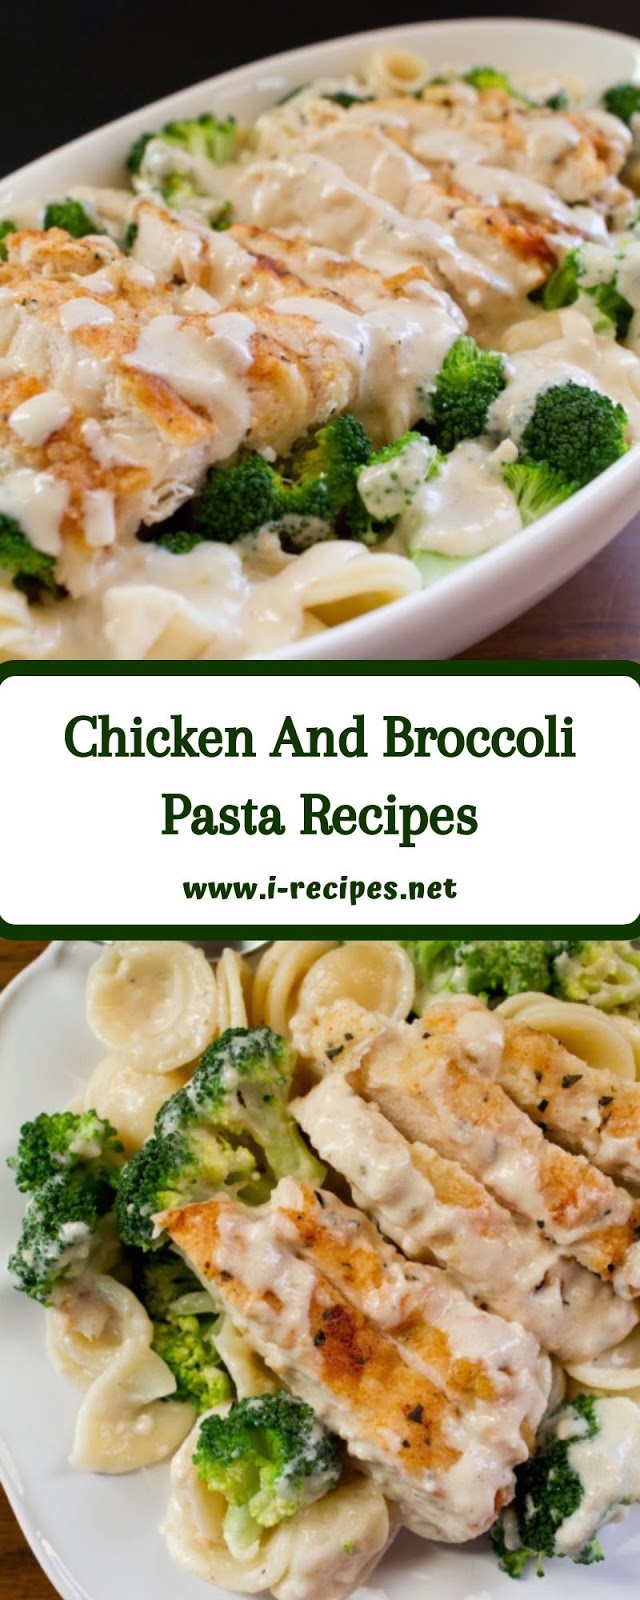 Chicken And Broccoli Pasta Recipes